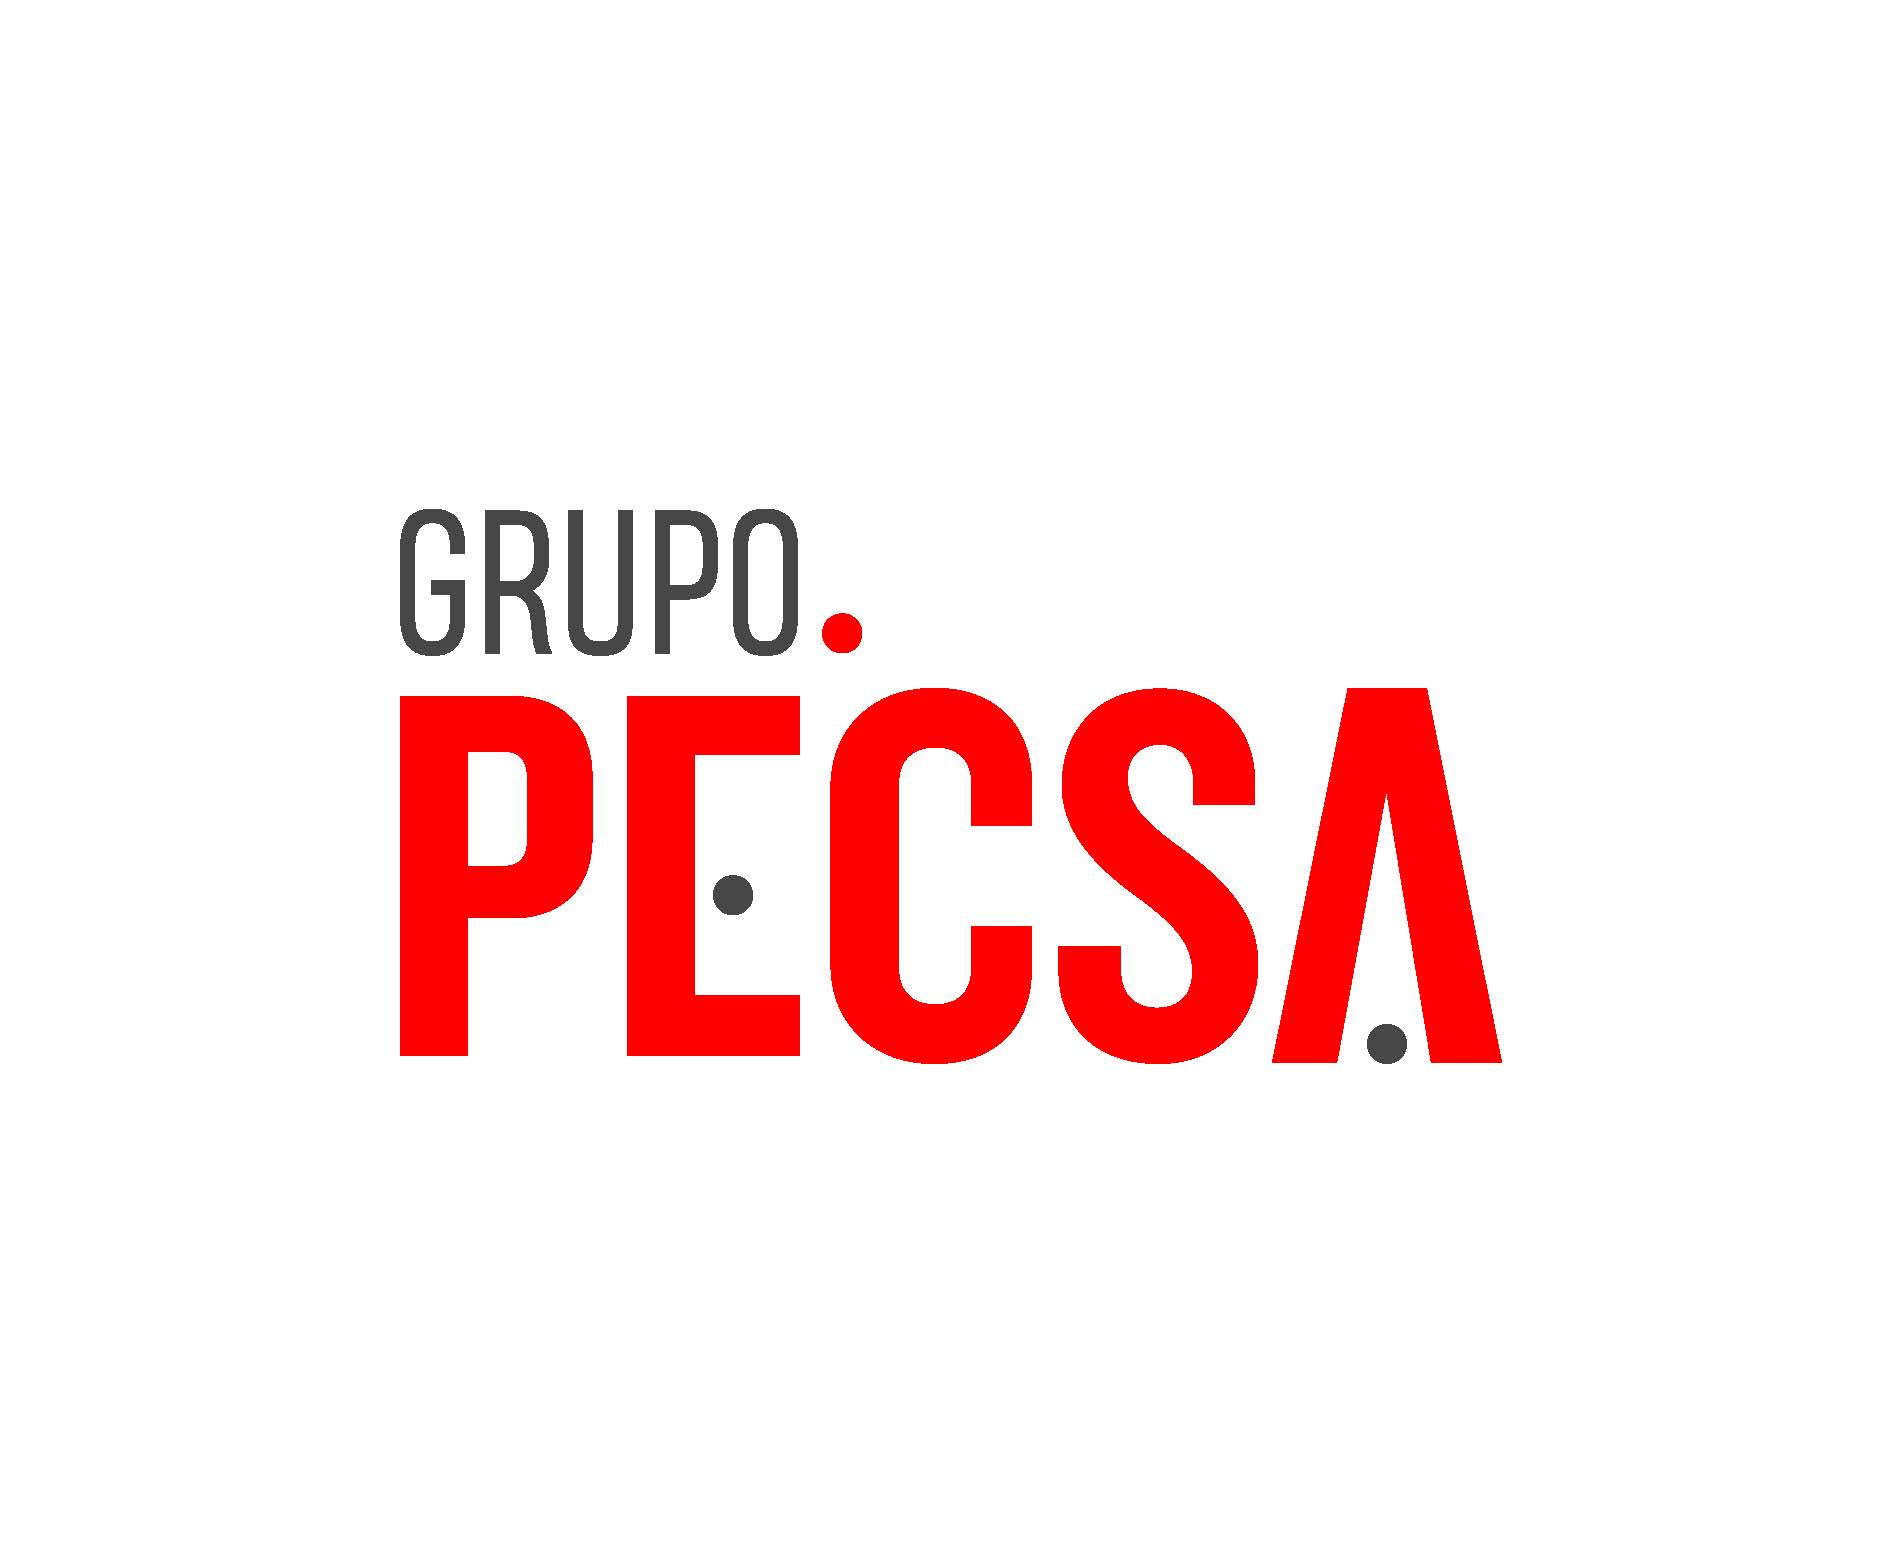 - GRUPO PECSA logo